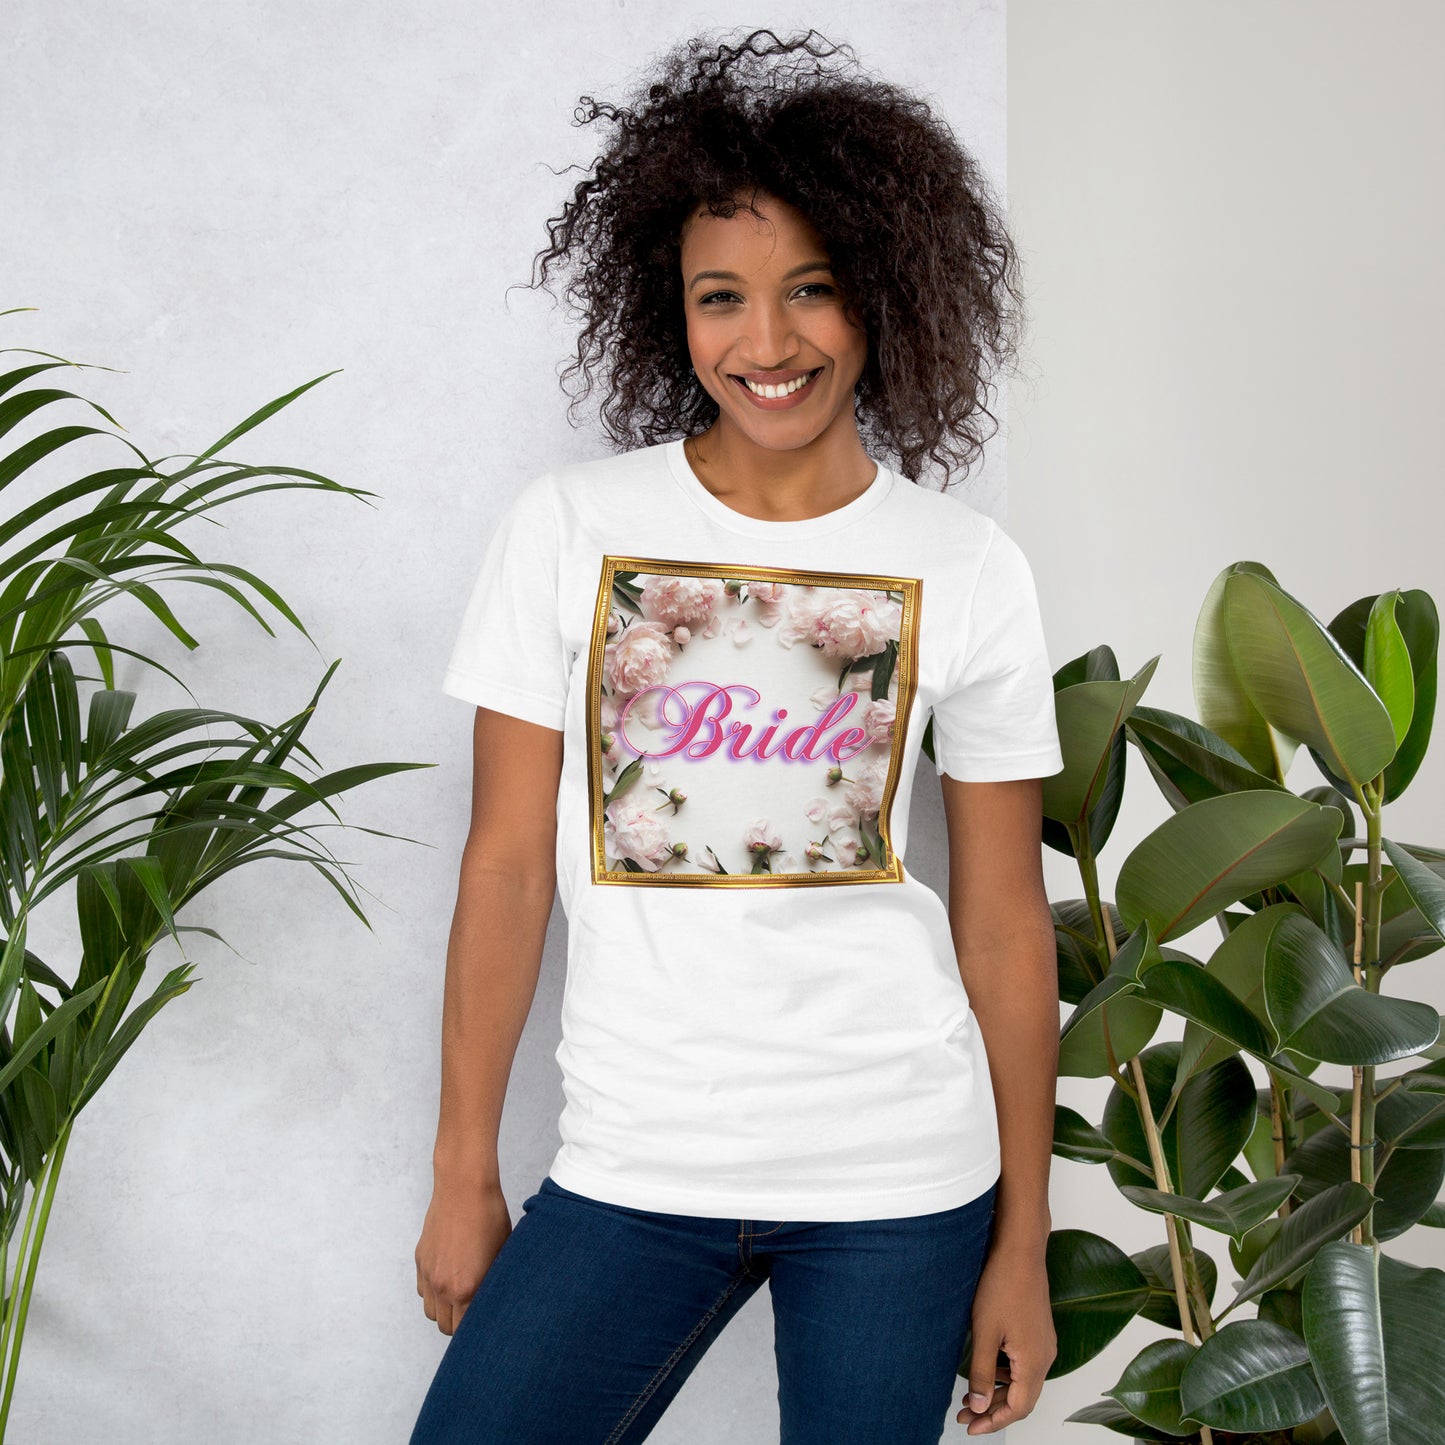 Bride Unisex t-shirt